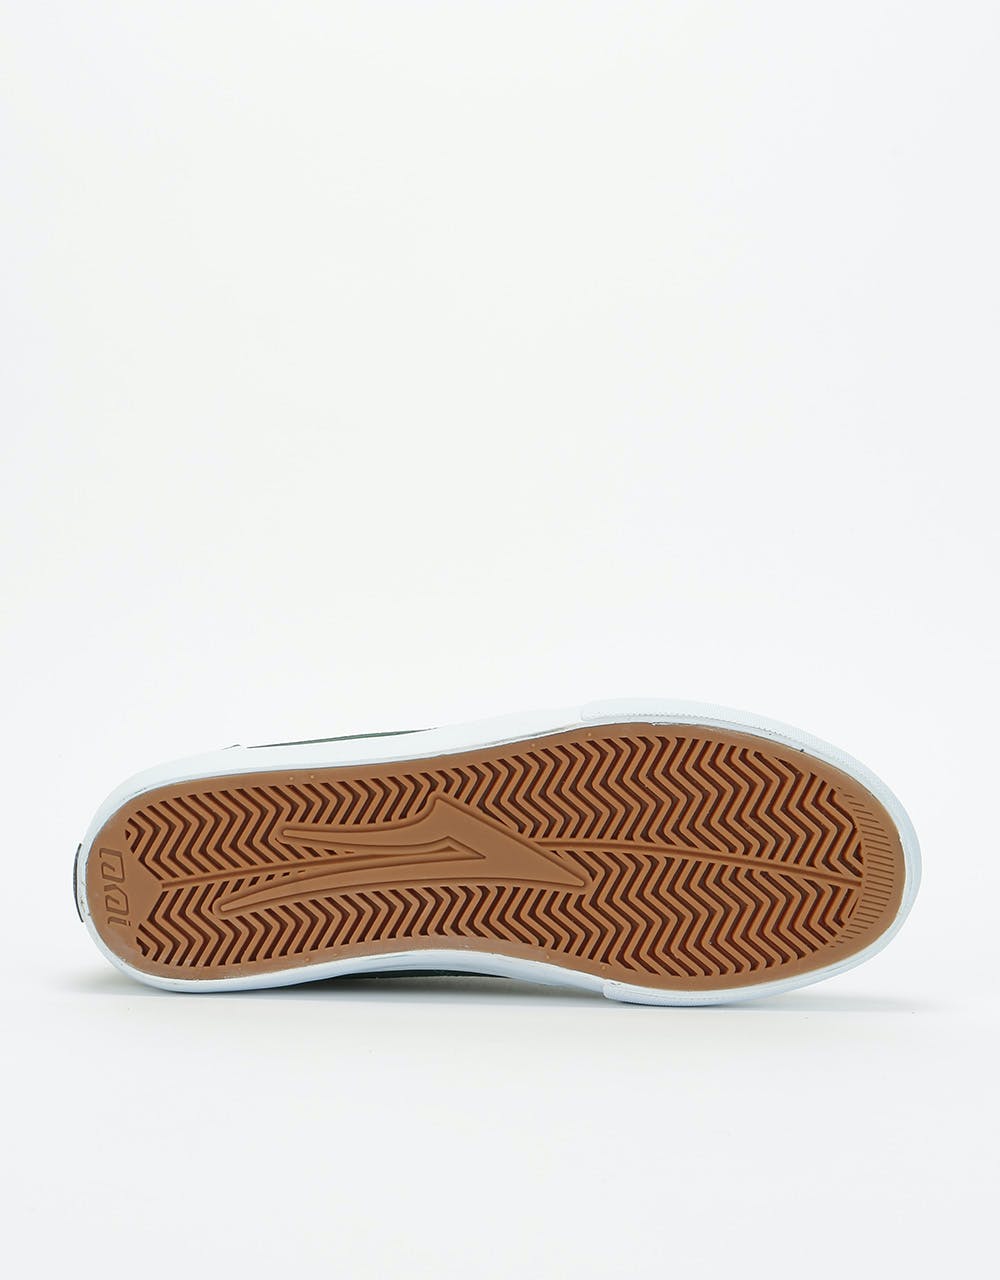 Lakai Griffin Textile Skate Shoes - Pine Canvas